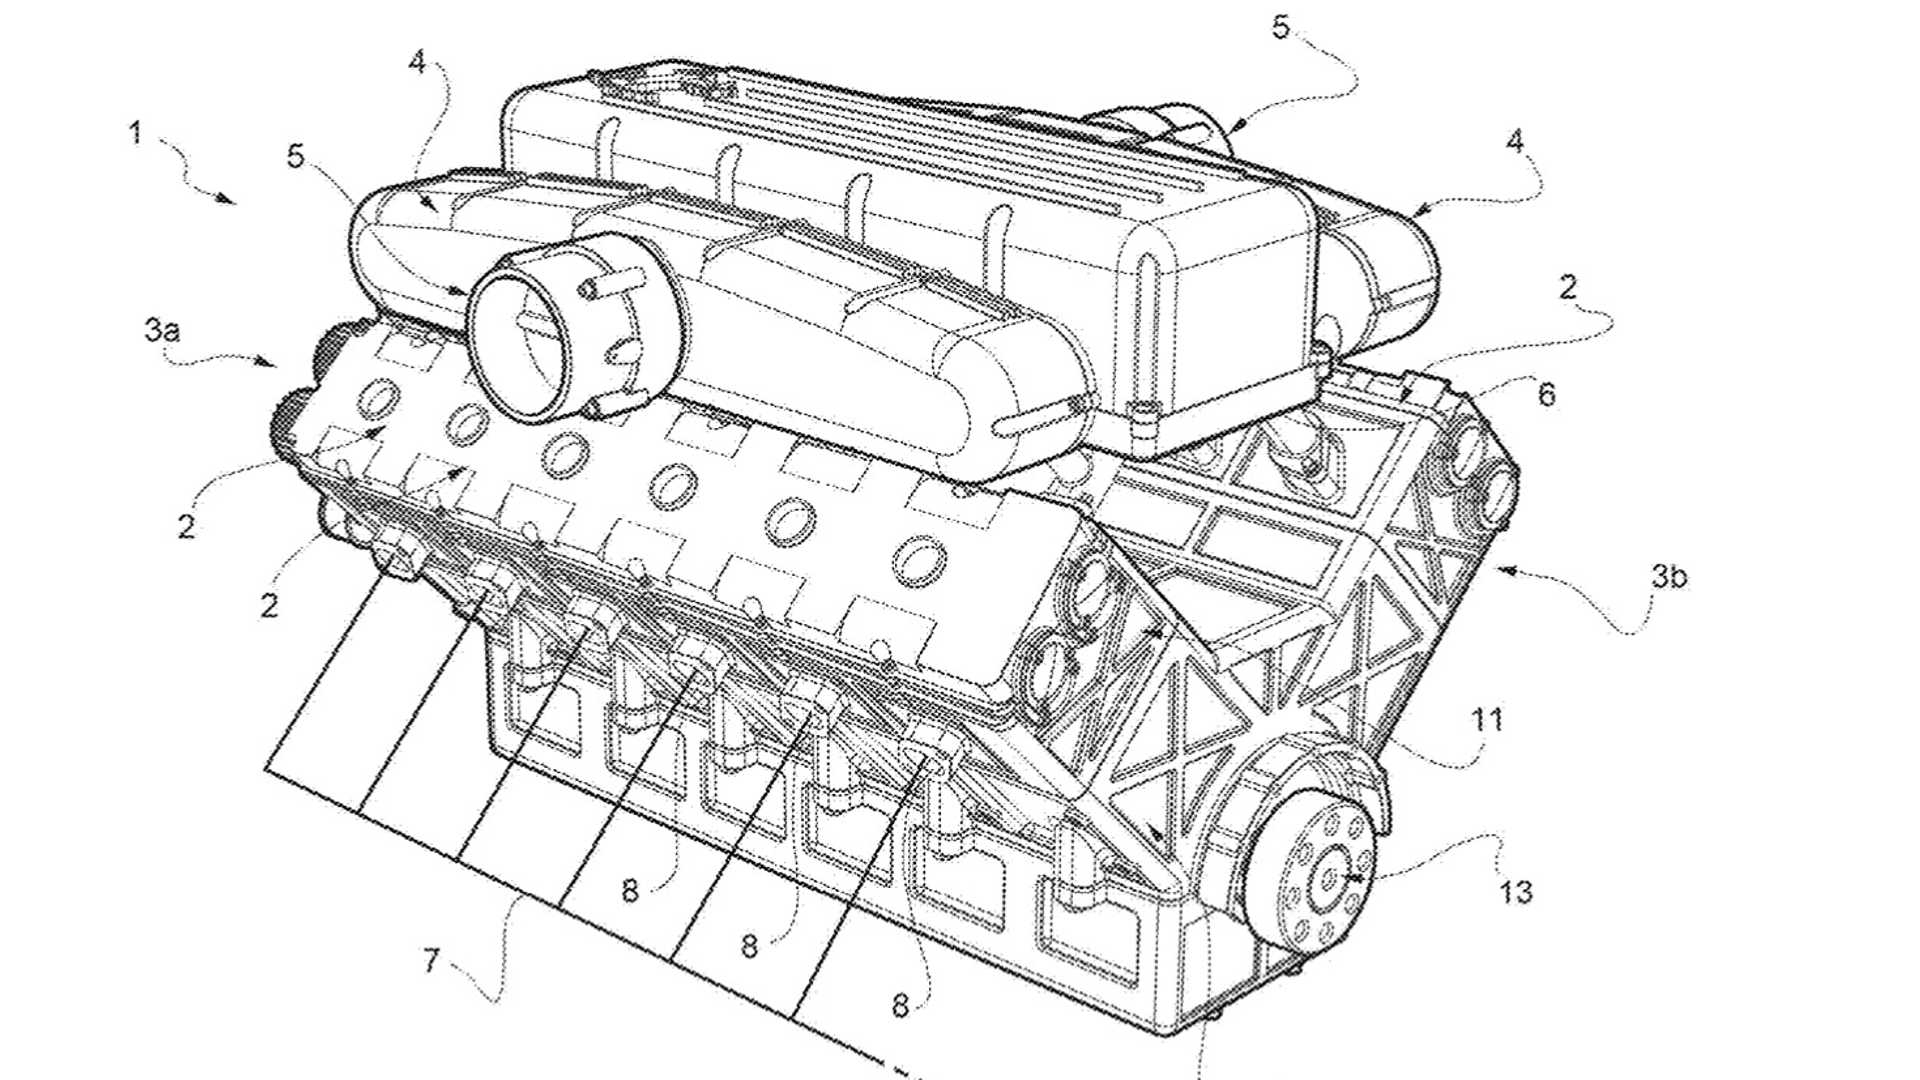 Ferrari patent V12